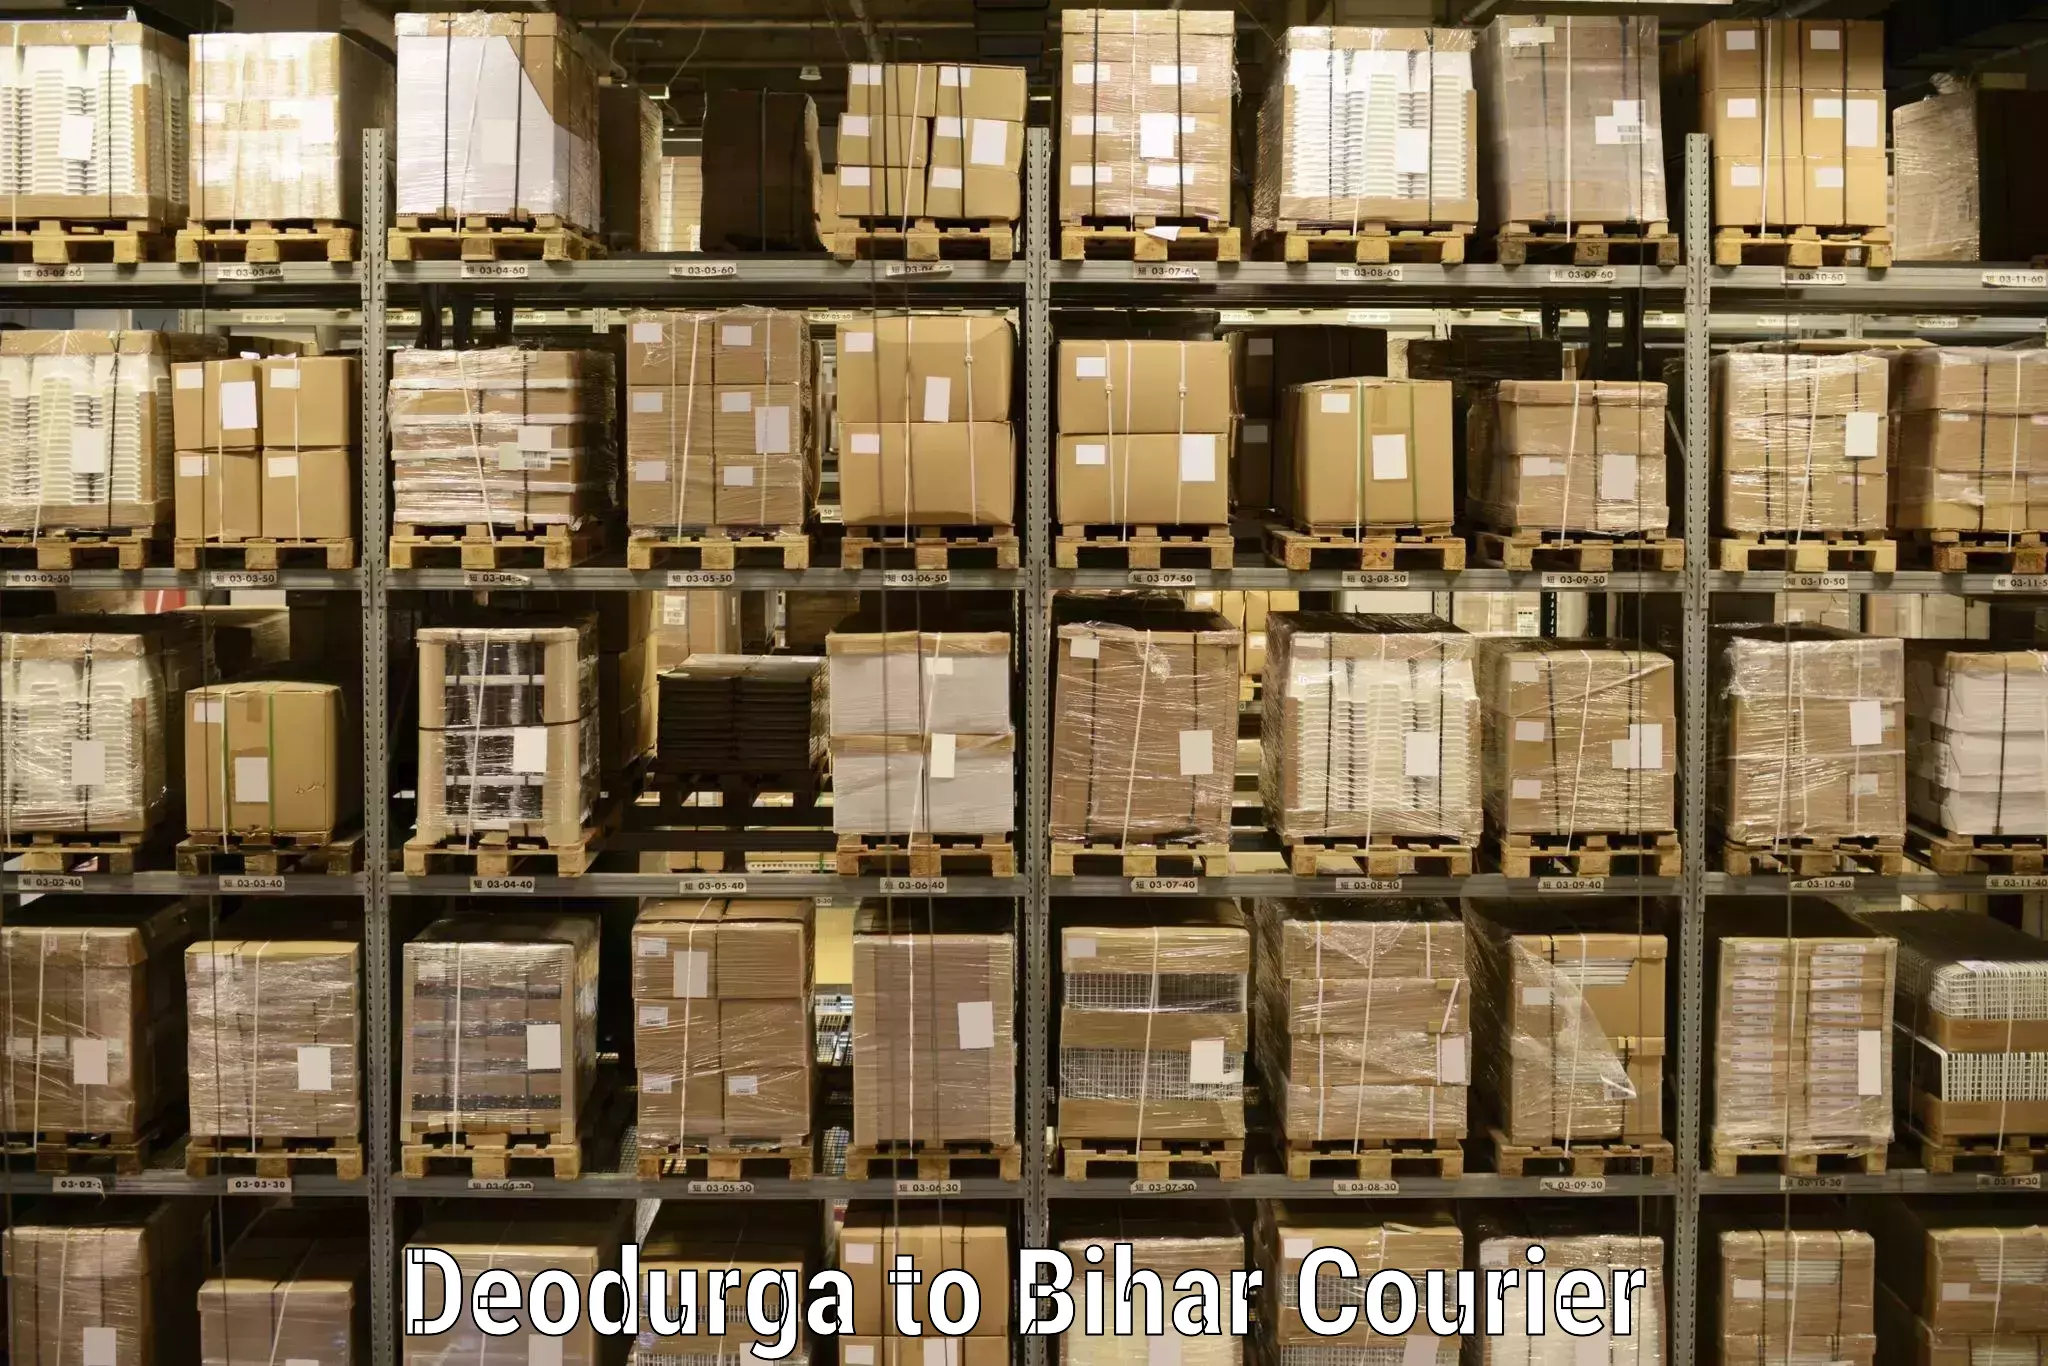 24/7 courier service Deodurga to Alamnagar